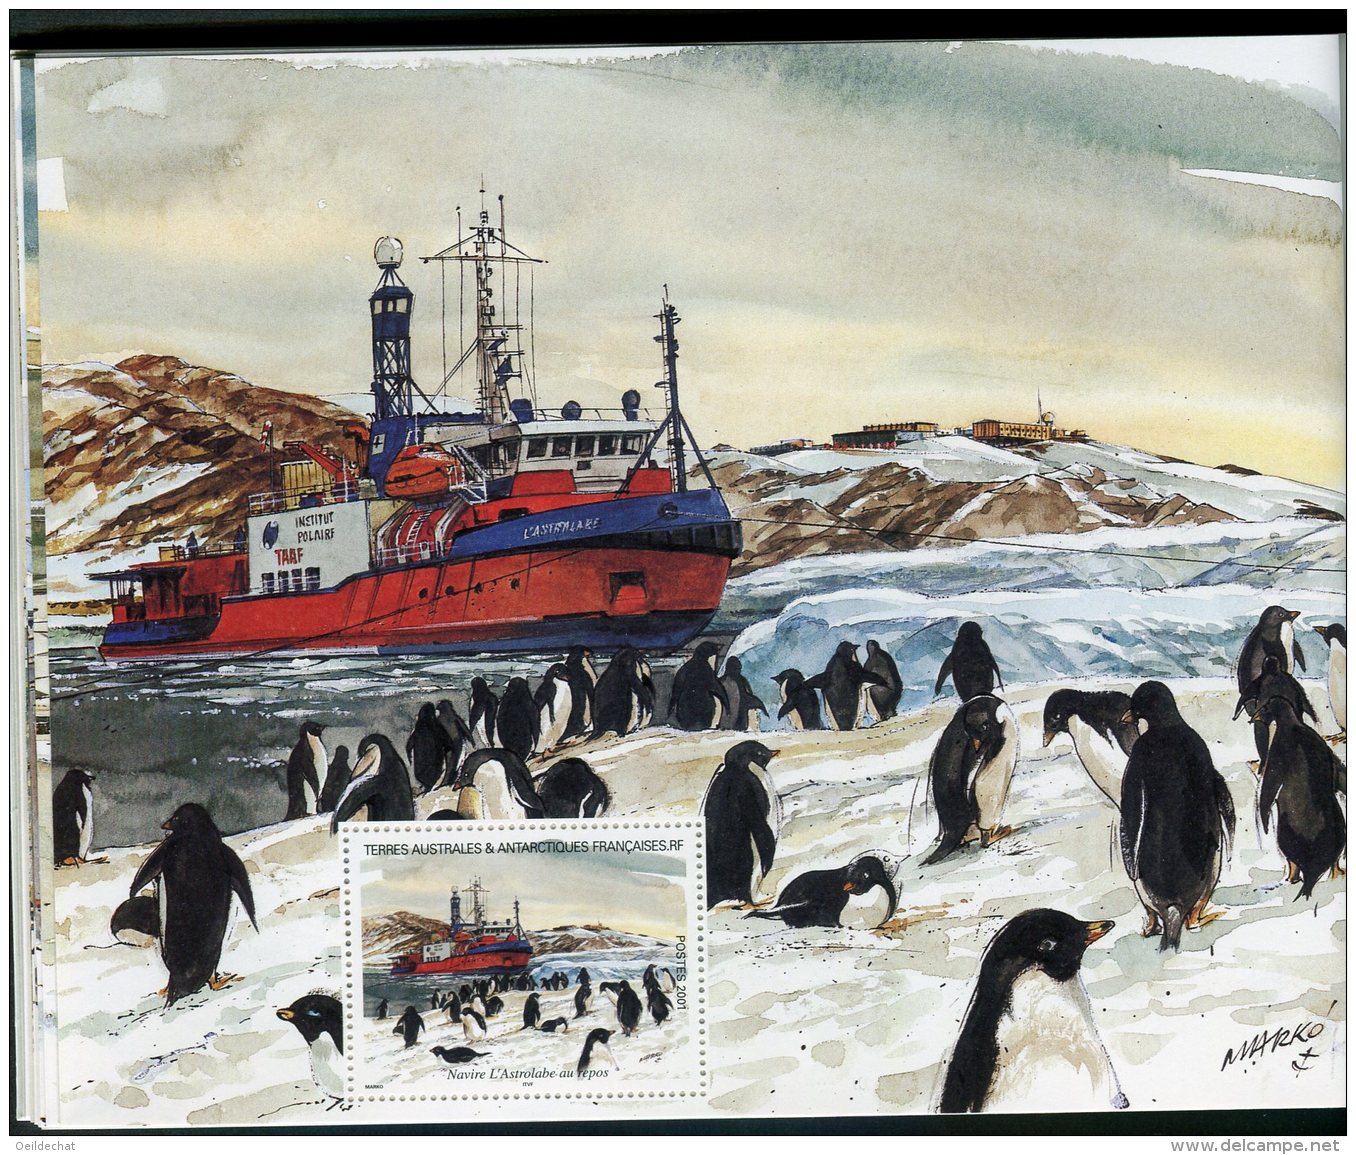 7574  Terres Australes et Antarctiques Françaises  carnet de voyage   C 308  (n°308/21)    2001      SUPERBE